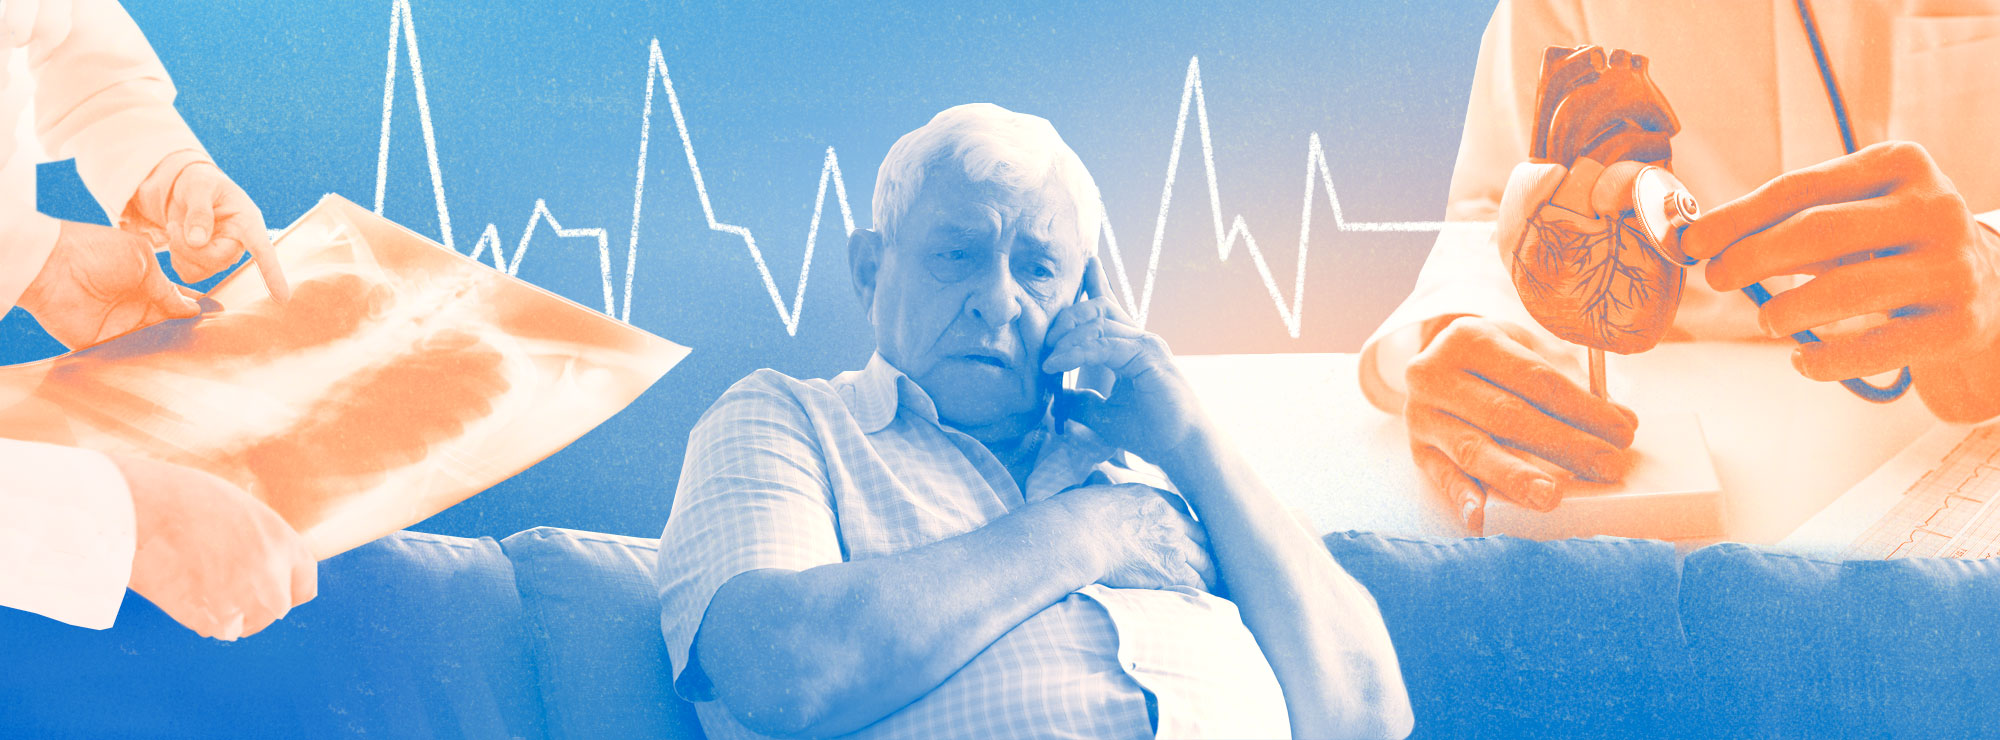 Полноразмерная обложка поста на тему: Как отличить инфаркт от межрёберной невралгии